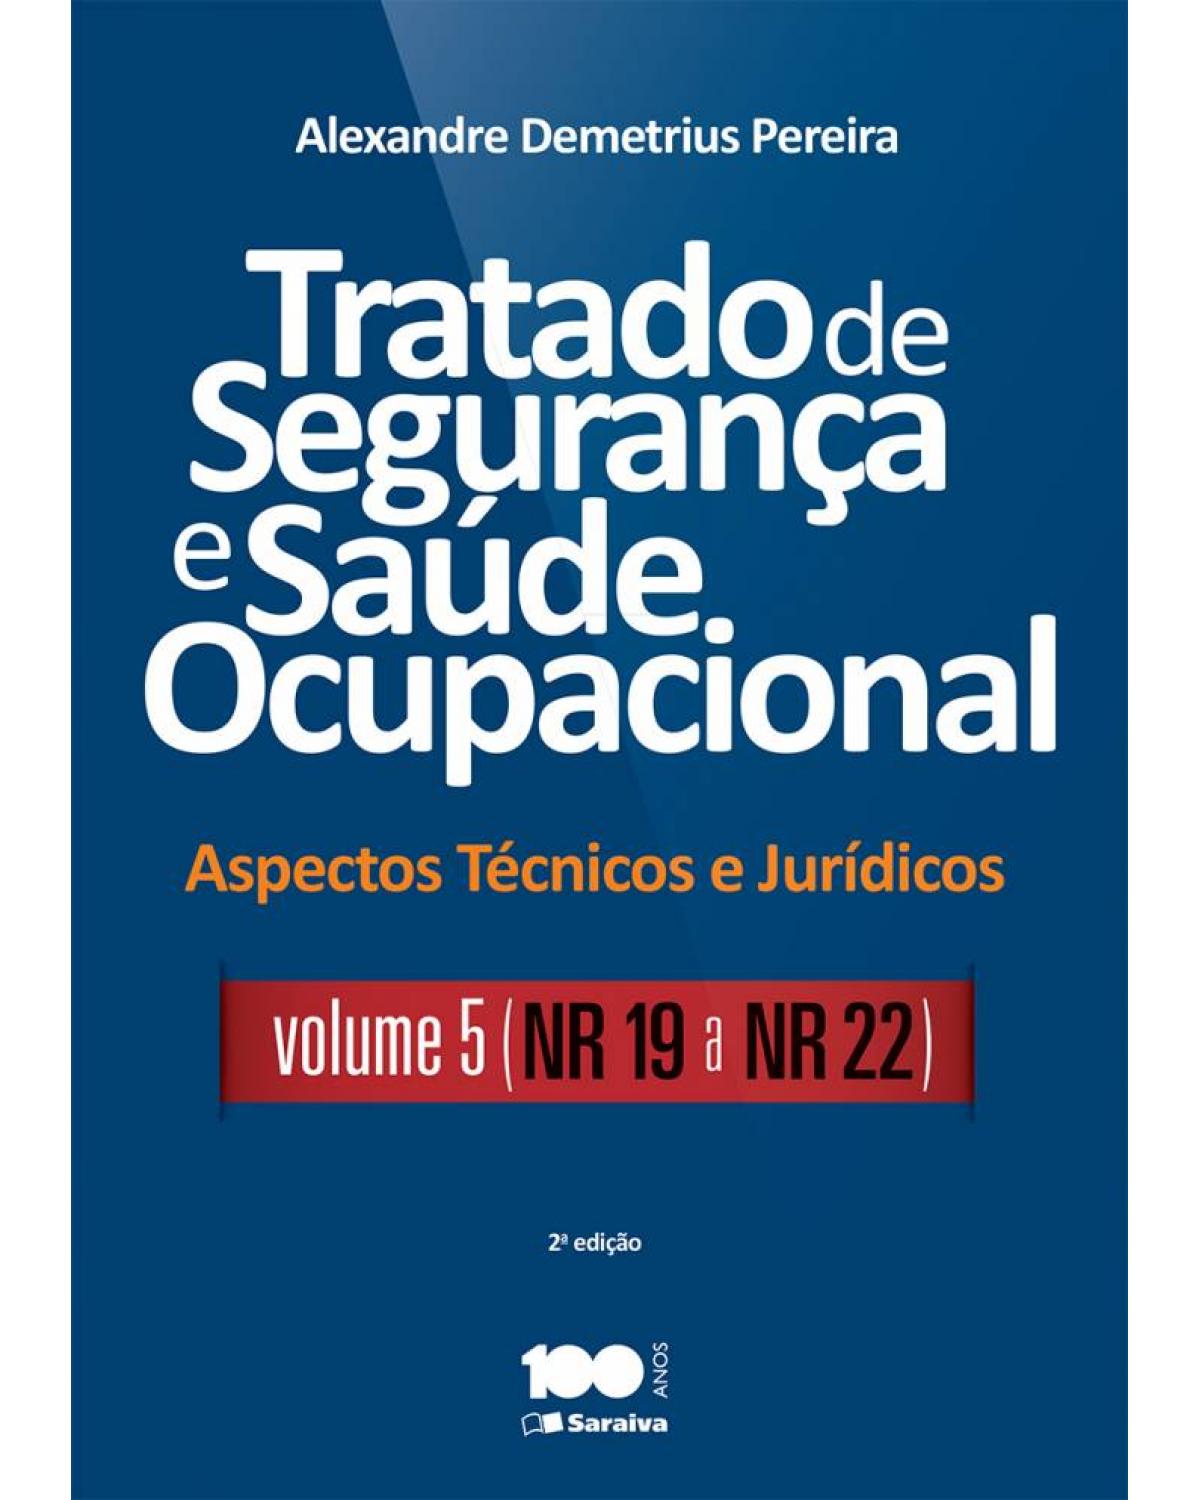 Tratado de segurança e saúde ocupacional - Volume 5: aspectos técnicos e jurídicos - NR 19 a NR 22 - 2ª Edição | 2015